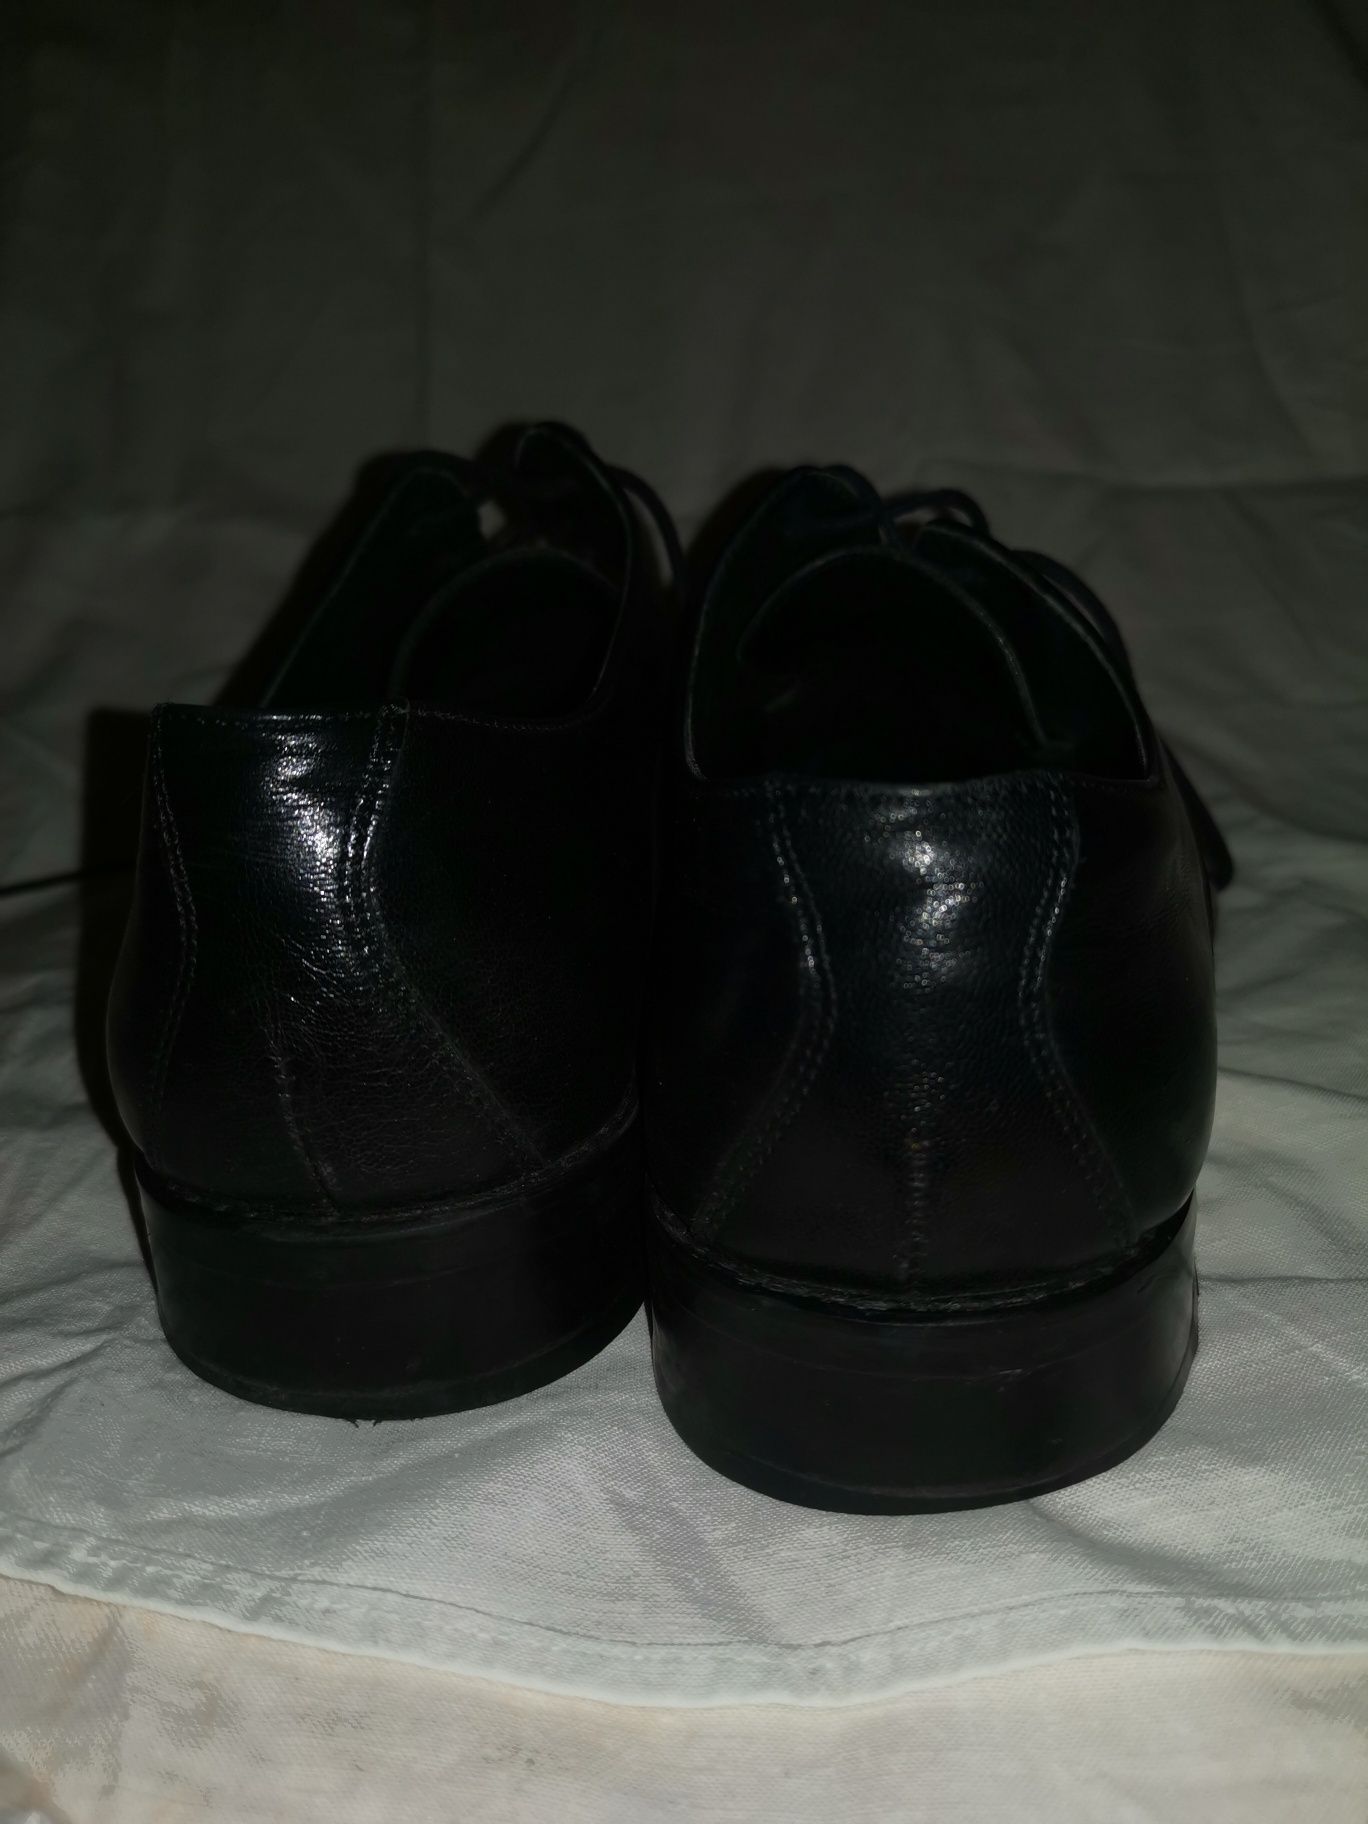 Pantofle męskie, wizytowe, czarne,  GIACOMO CONTI